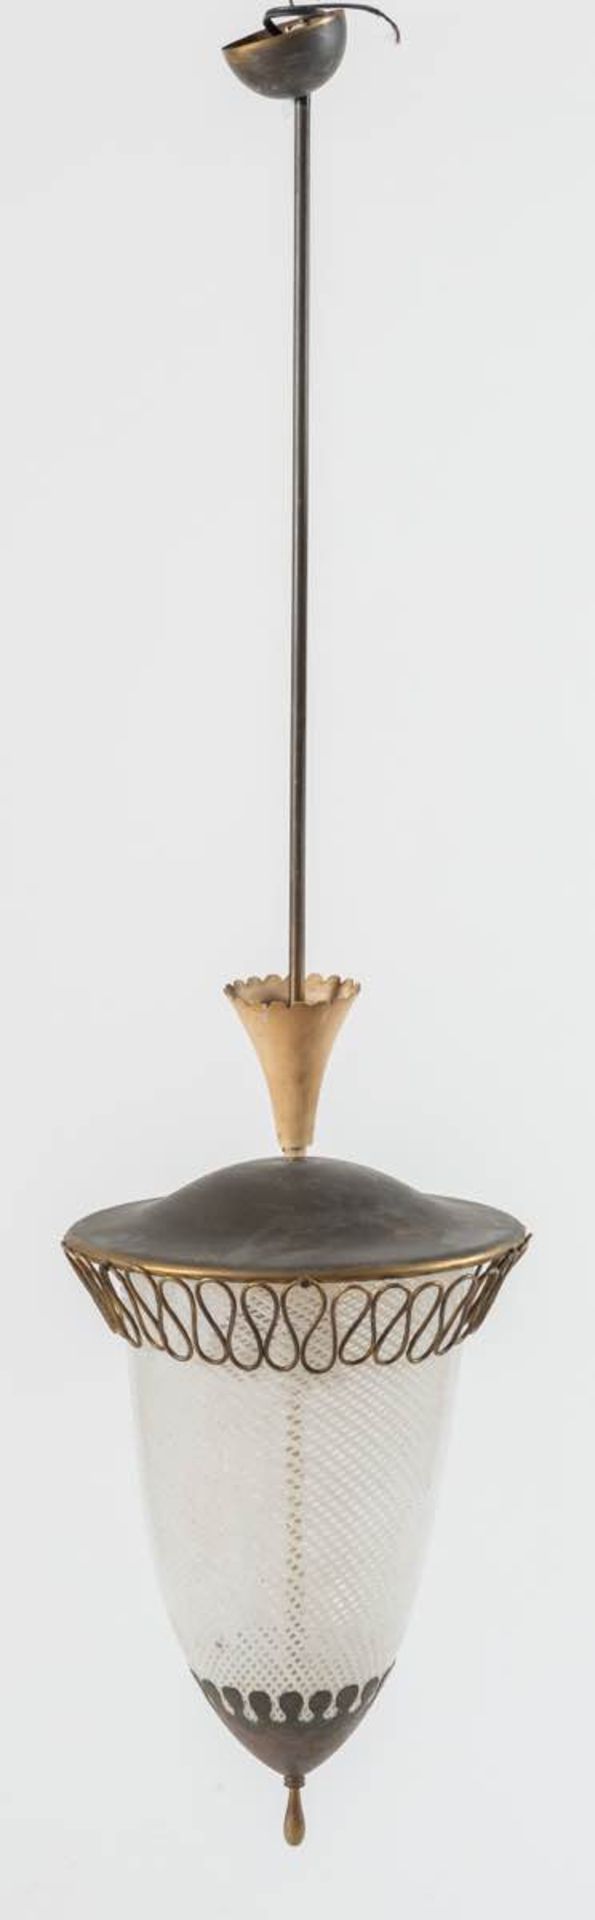 Lampada a sospensione in vetro Reticello e ottone, Anni ‘40. - Image 2 of 2